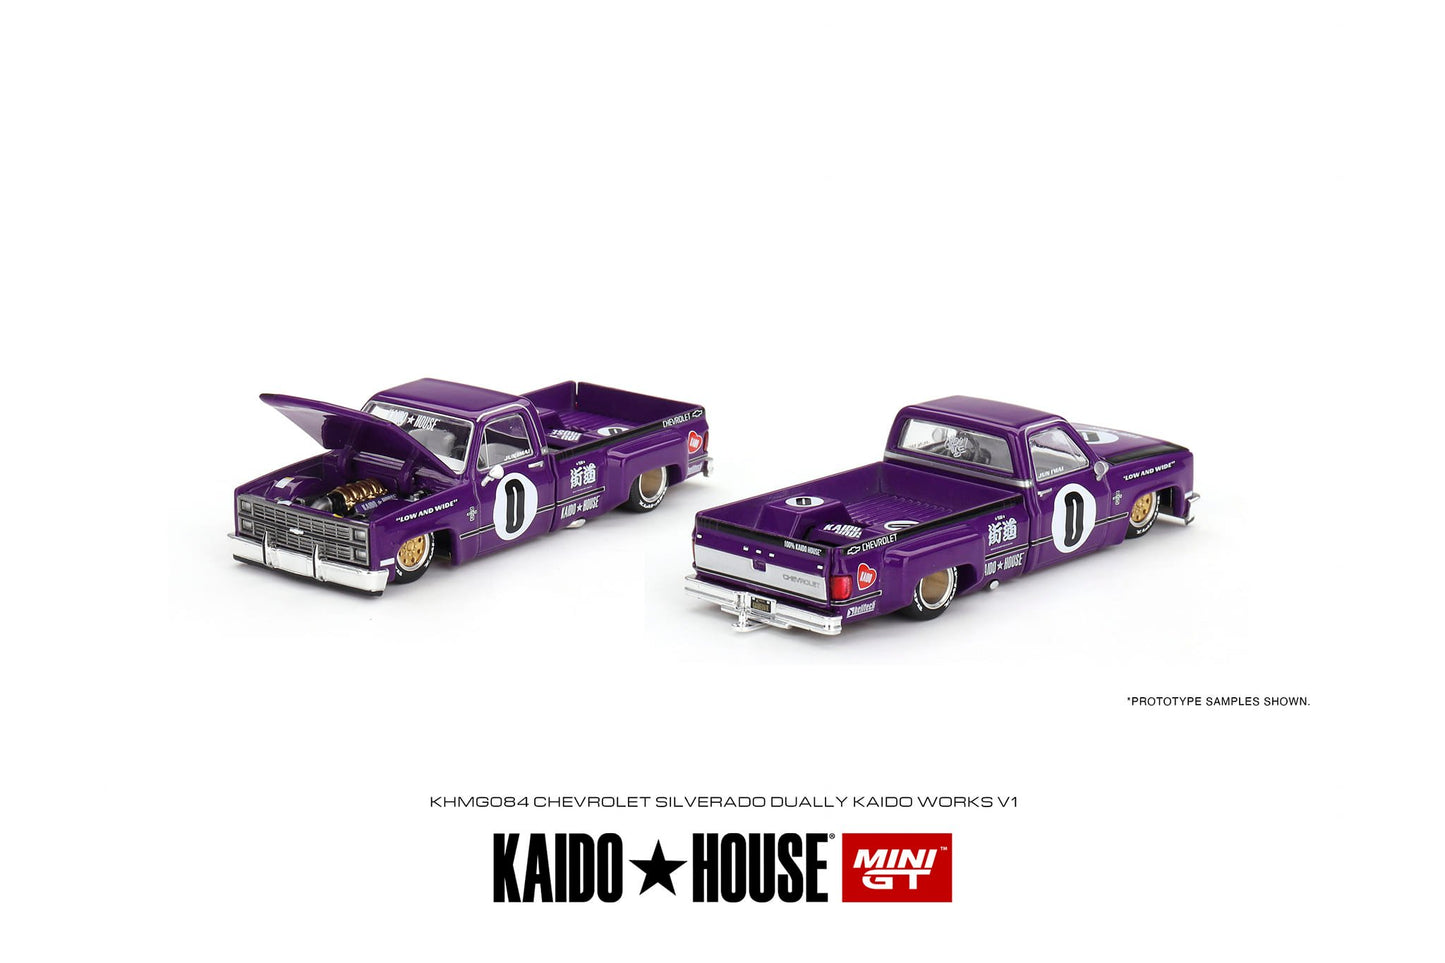 Mini GT x Kaido★House 1/64 Chevrolet Silverado Dually KAIDO V1